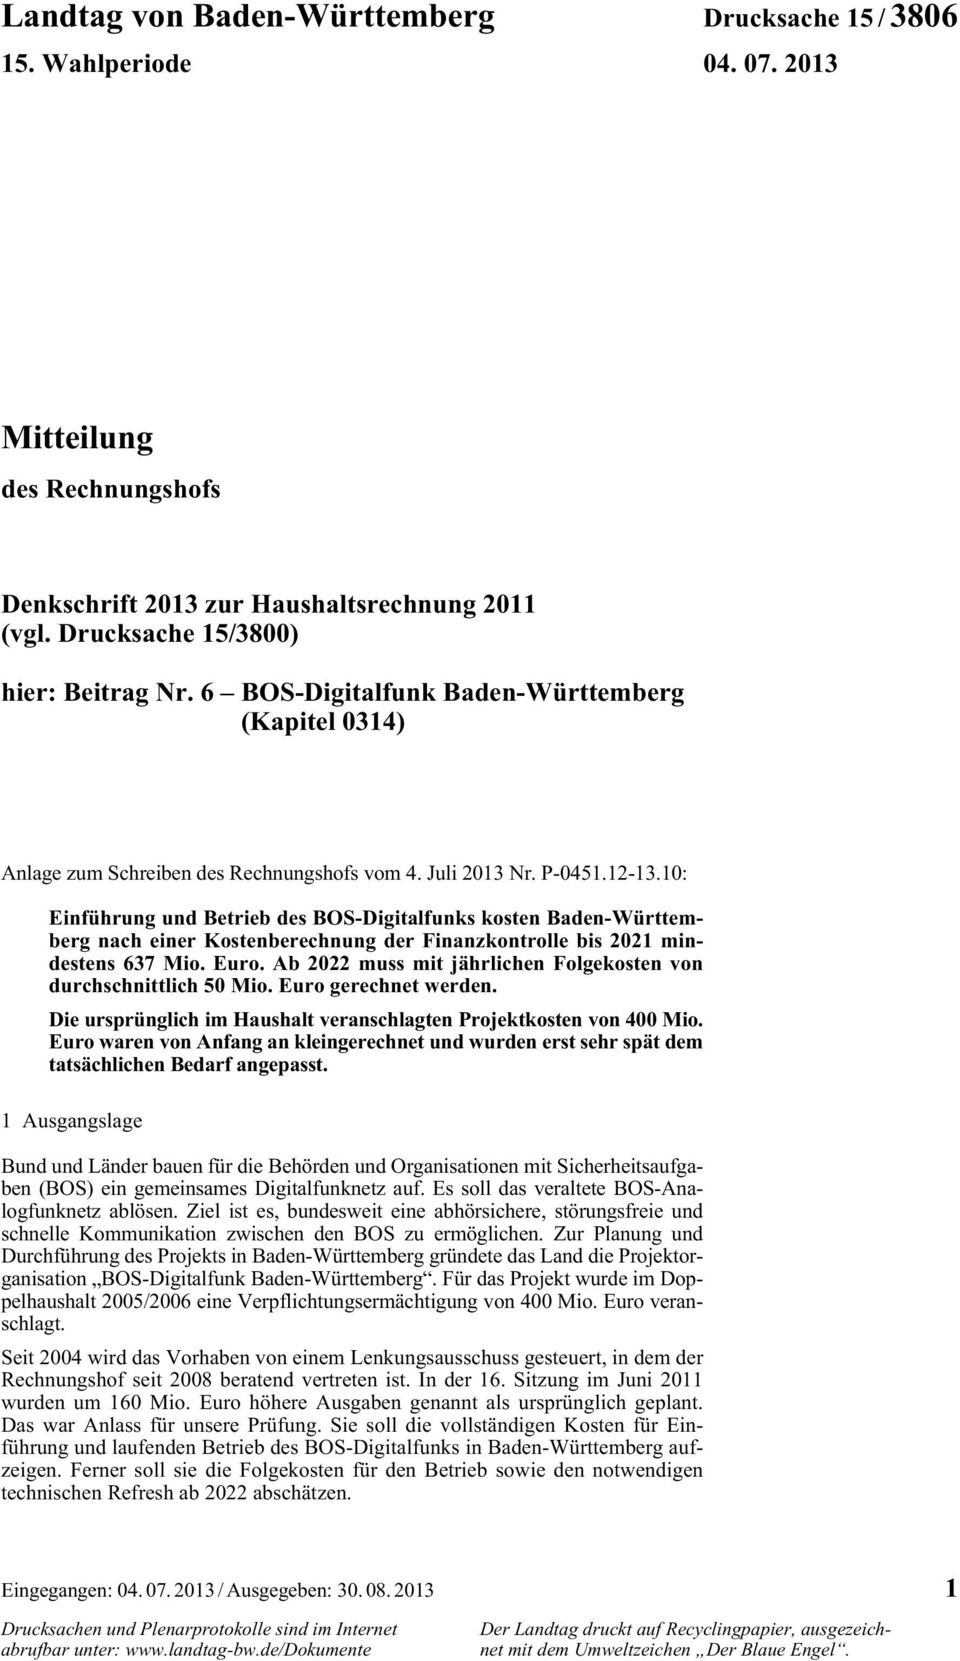 10: Einführung und Betrieb des BOS-Digitalfunks kosten Baden-Württemberg nach einer Kostenberechnung der Finanzkontrolle bis 2021 mindestens 637 Mio. Euro.